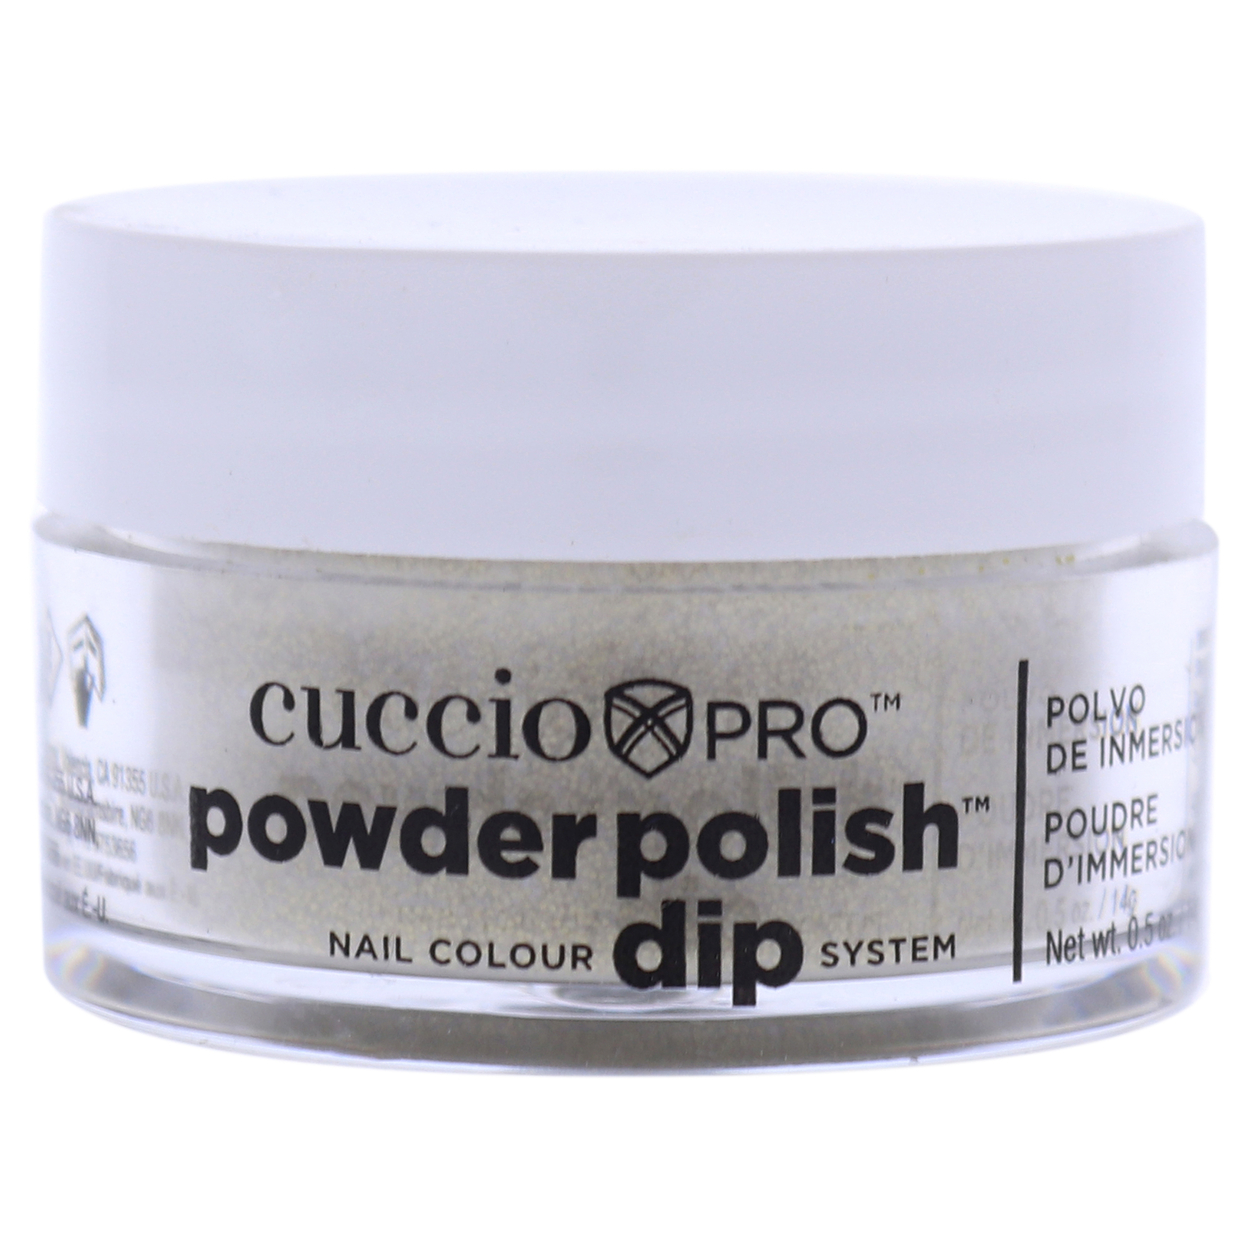 Cuccio Colour Pro Powder Polish Nail Colour Dip System - Rich Gold Glitter Nail Powder 0.5 Oz